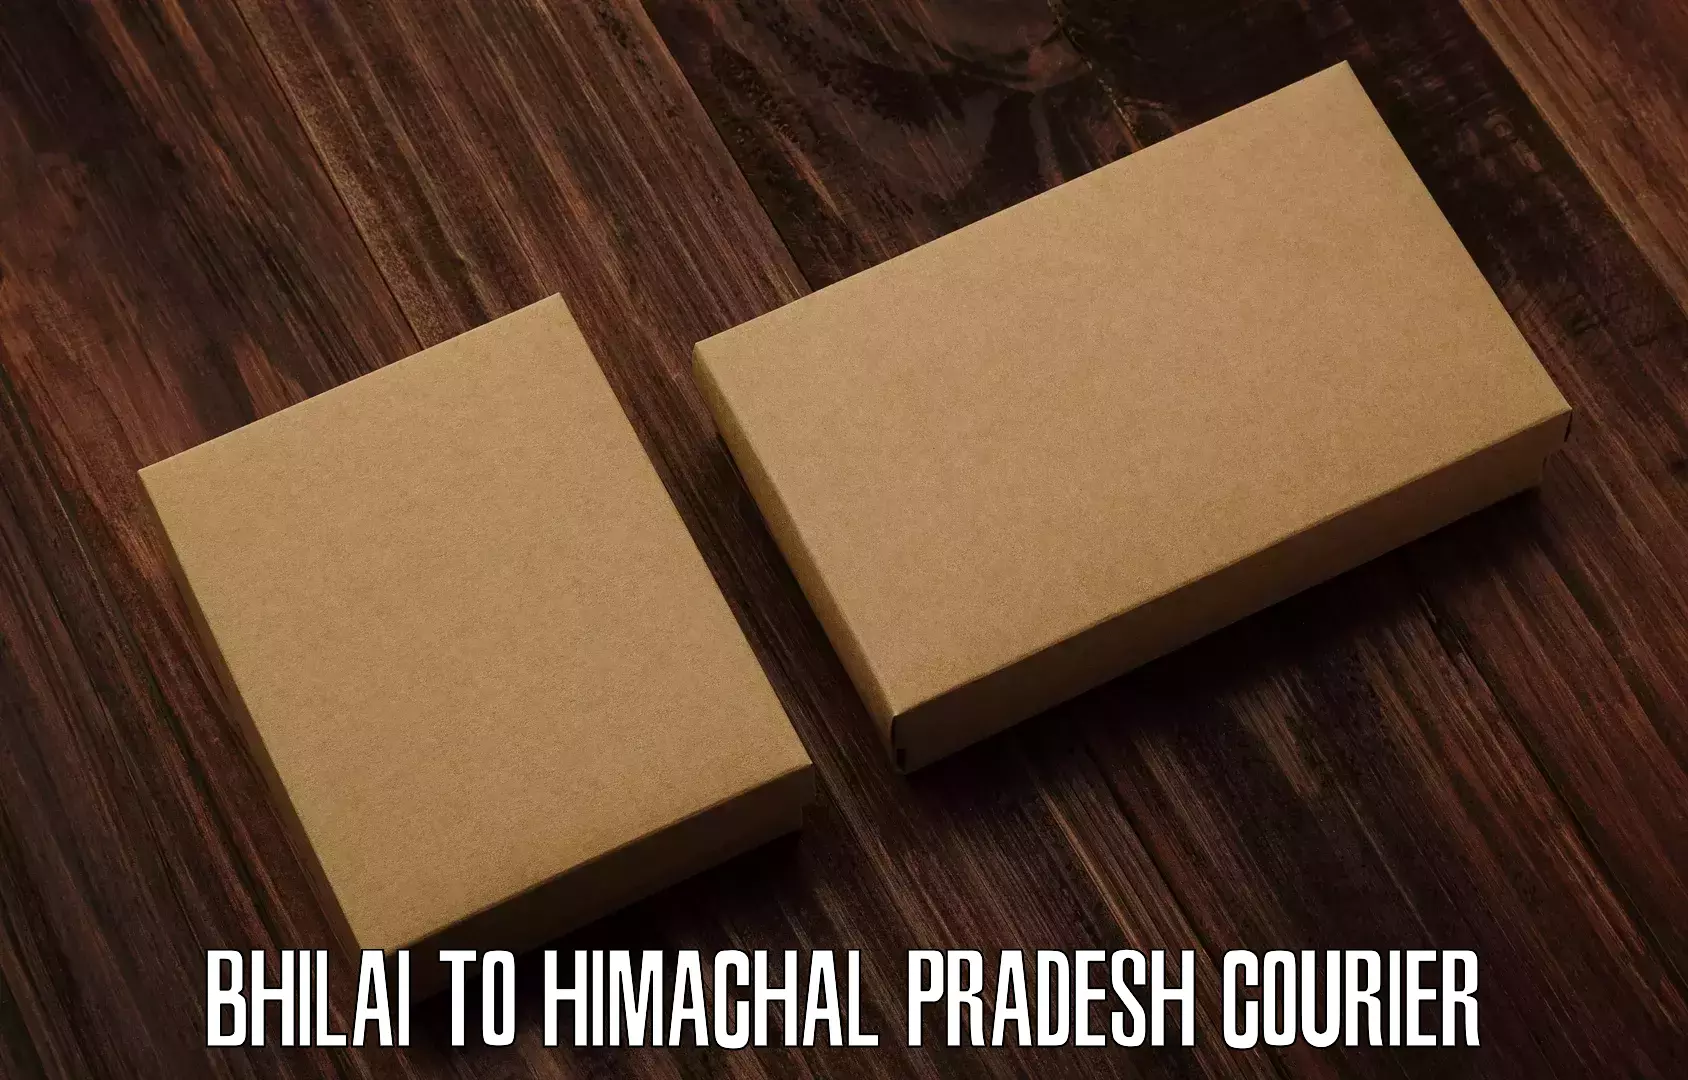 User-friendly courier app Bhilai to Indora